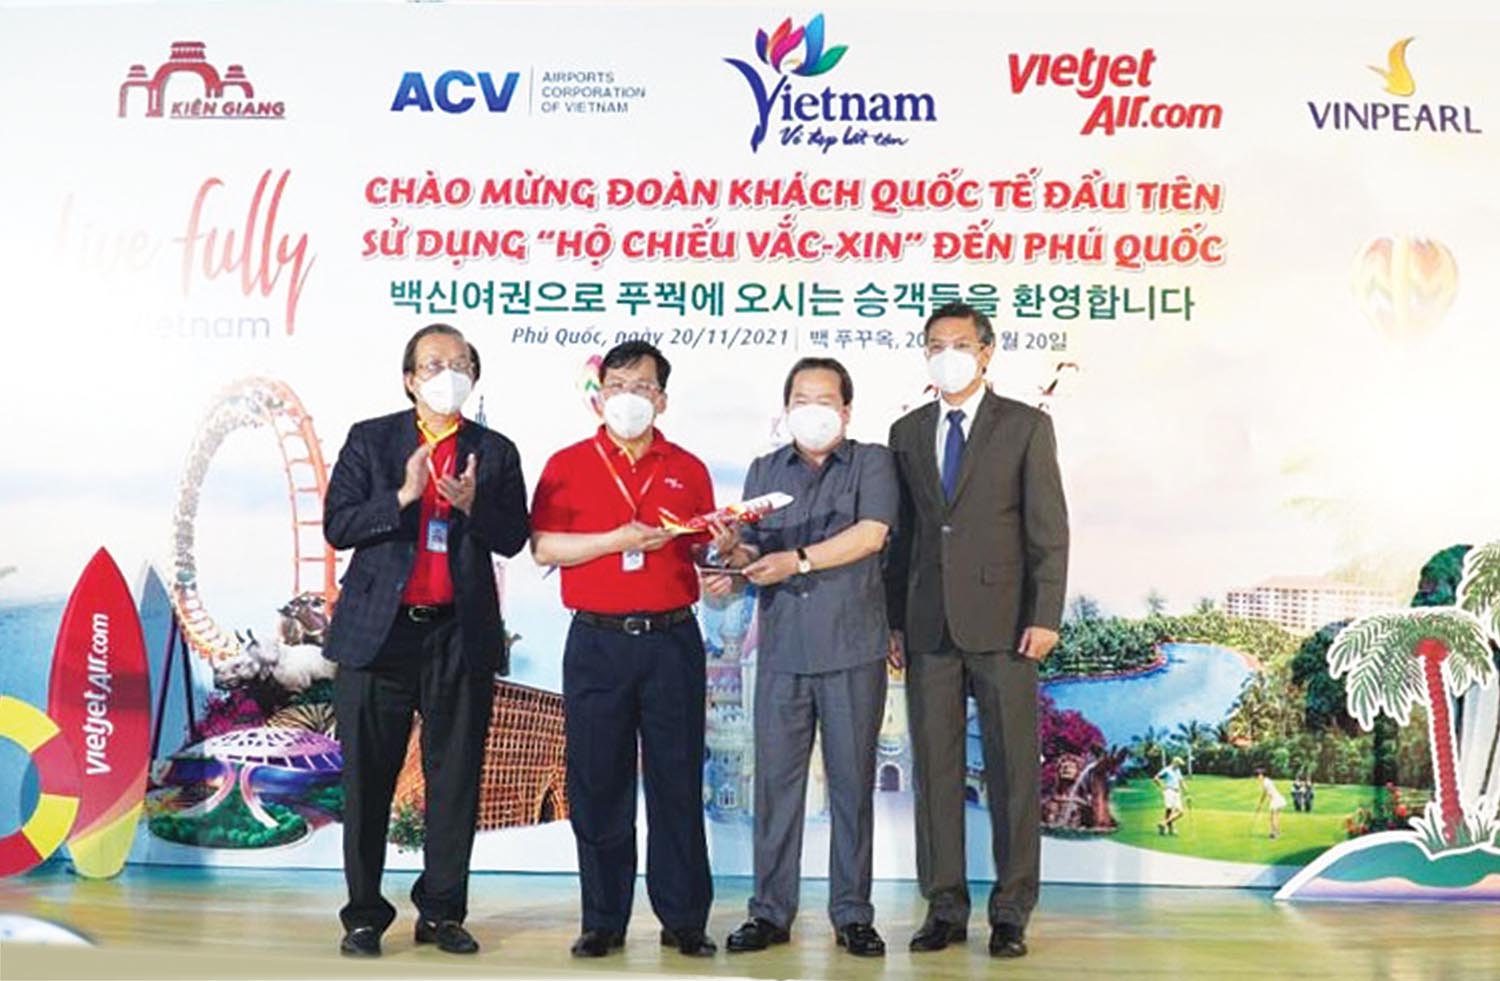 Đại diện lãnh đão tỉnh Kiên Giang đón du khách quốc tế đầu tiên sử dụng “hộ chiếu vắc-xin” đến Phú Quốc vào ngày 20/11/2021